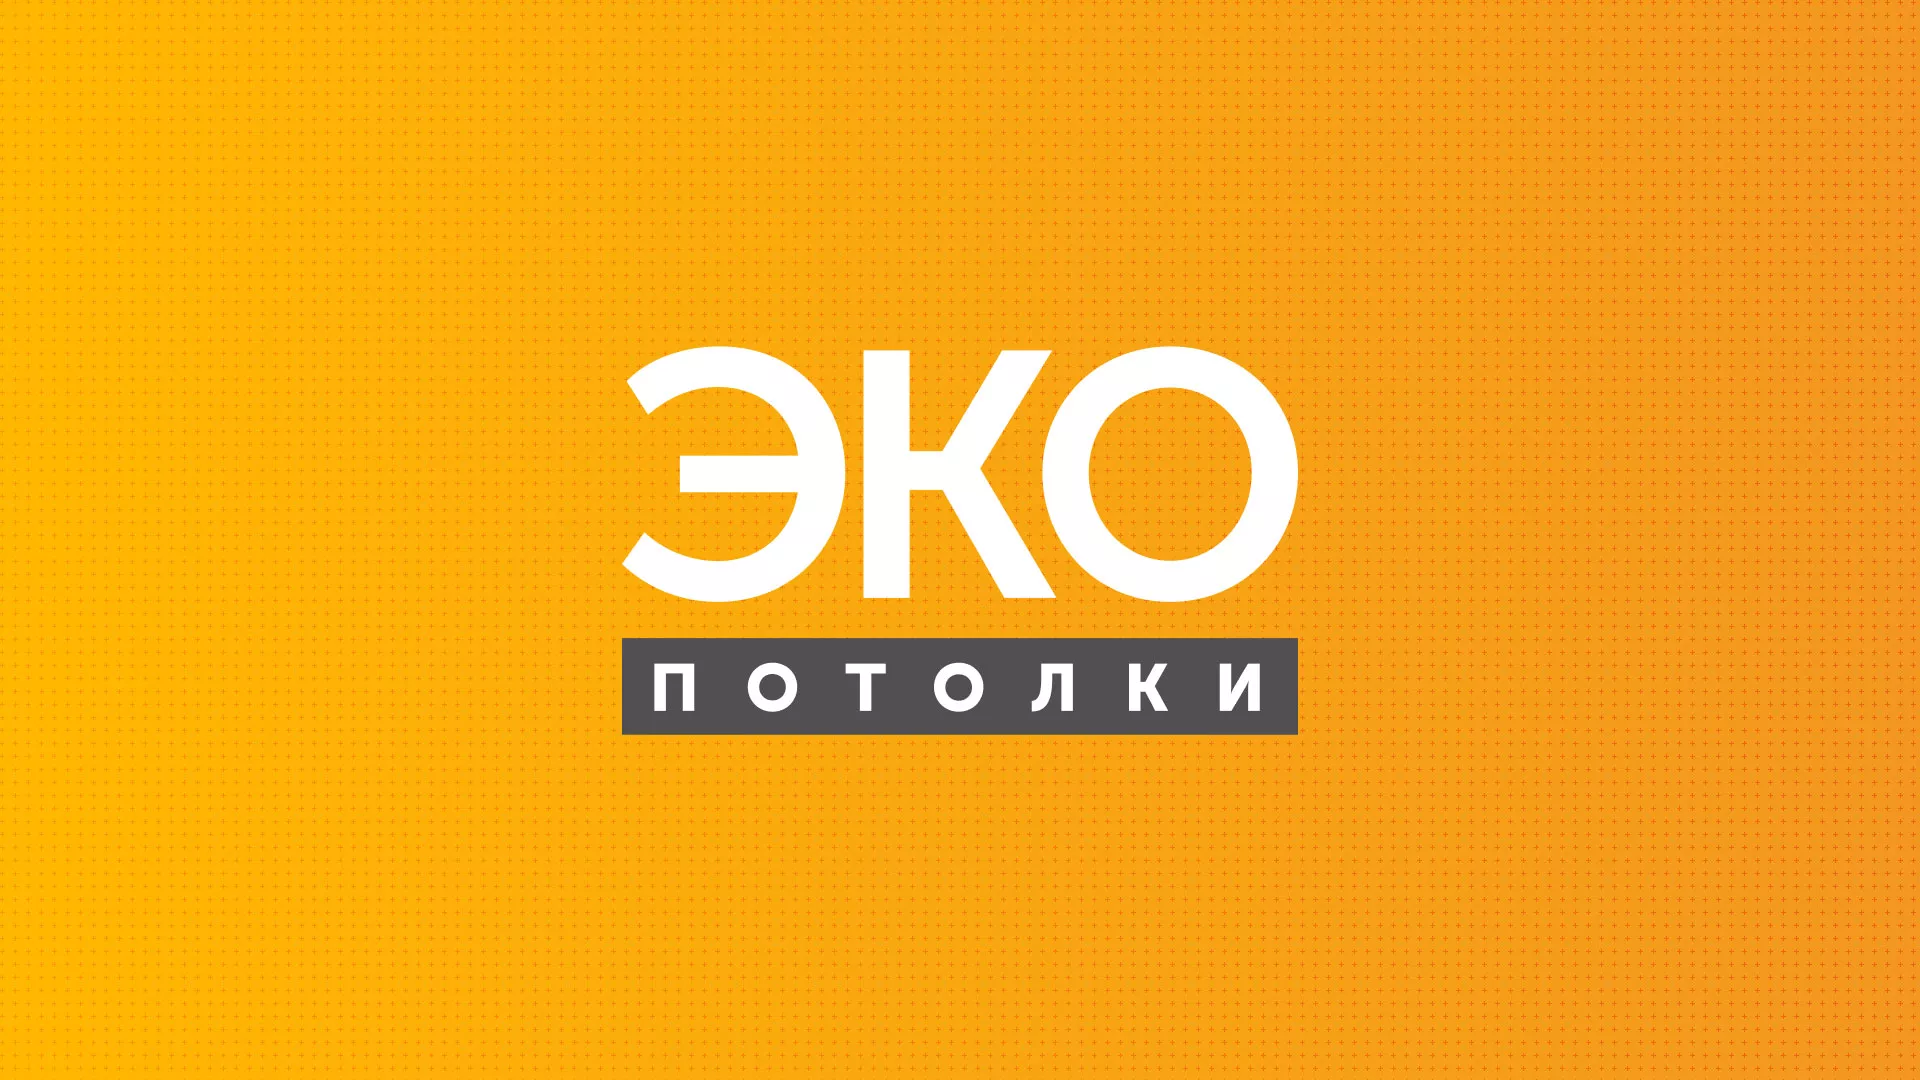 Разработка сайта по натяжным потолкам «Эко Потолки» в Санкт-Петербурге